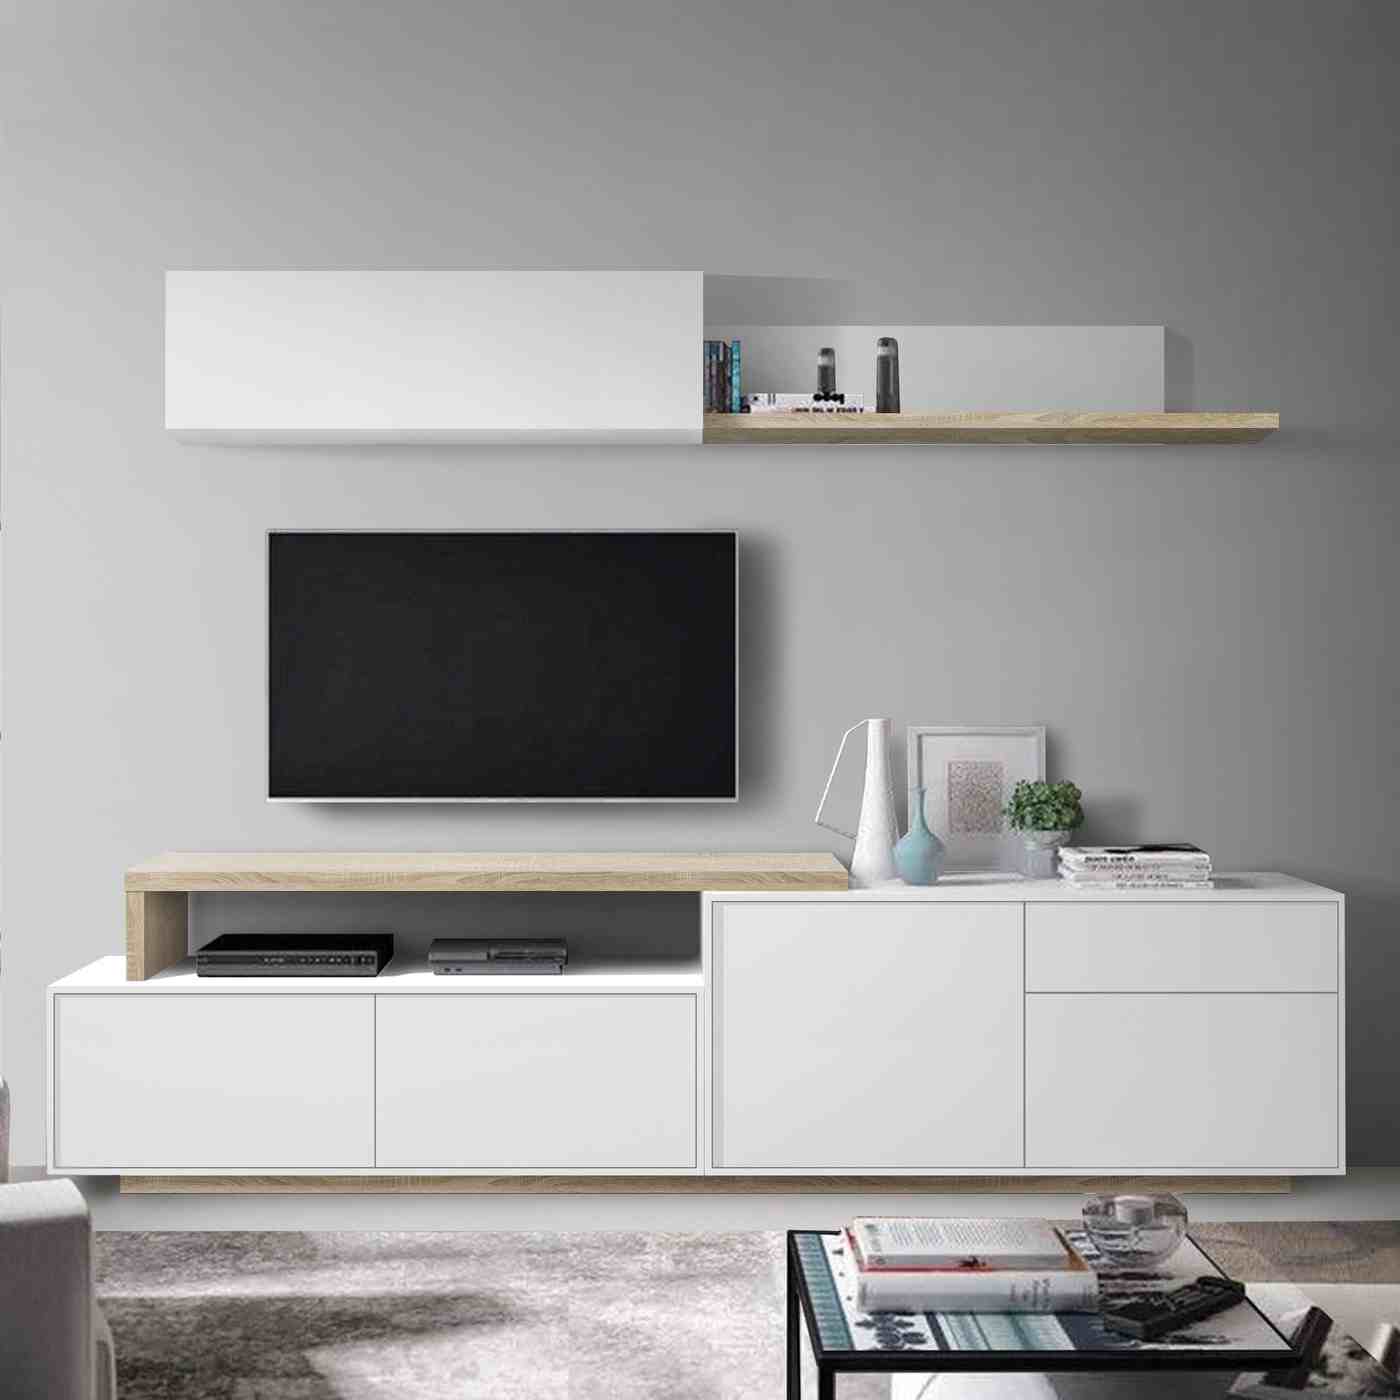 Modular para salón/comedor: Mueble TV de 240 cm, Modulo alto 1 puerta elevable y estante pared. Color blanco o cambrian